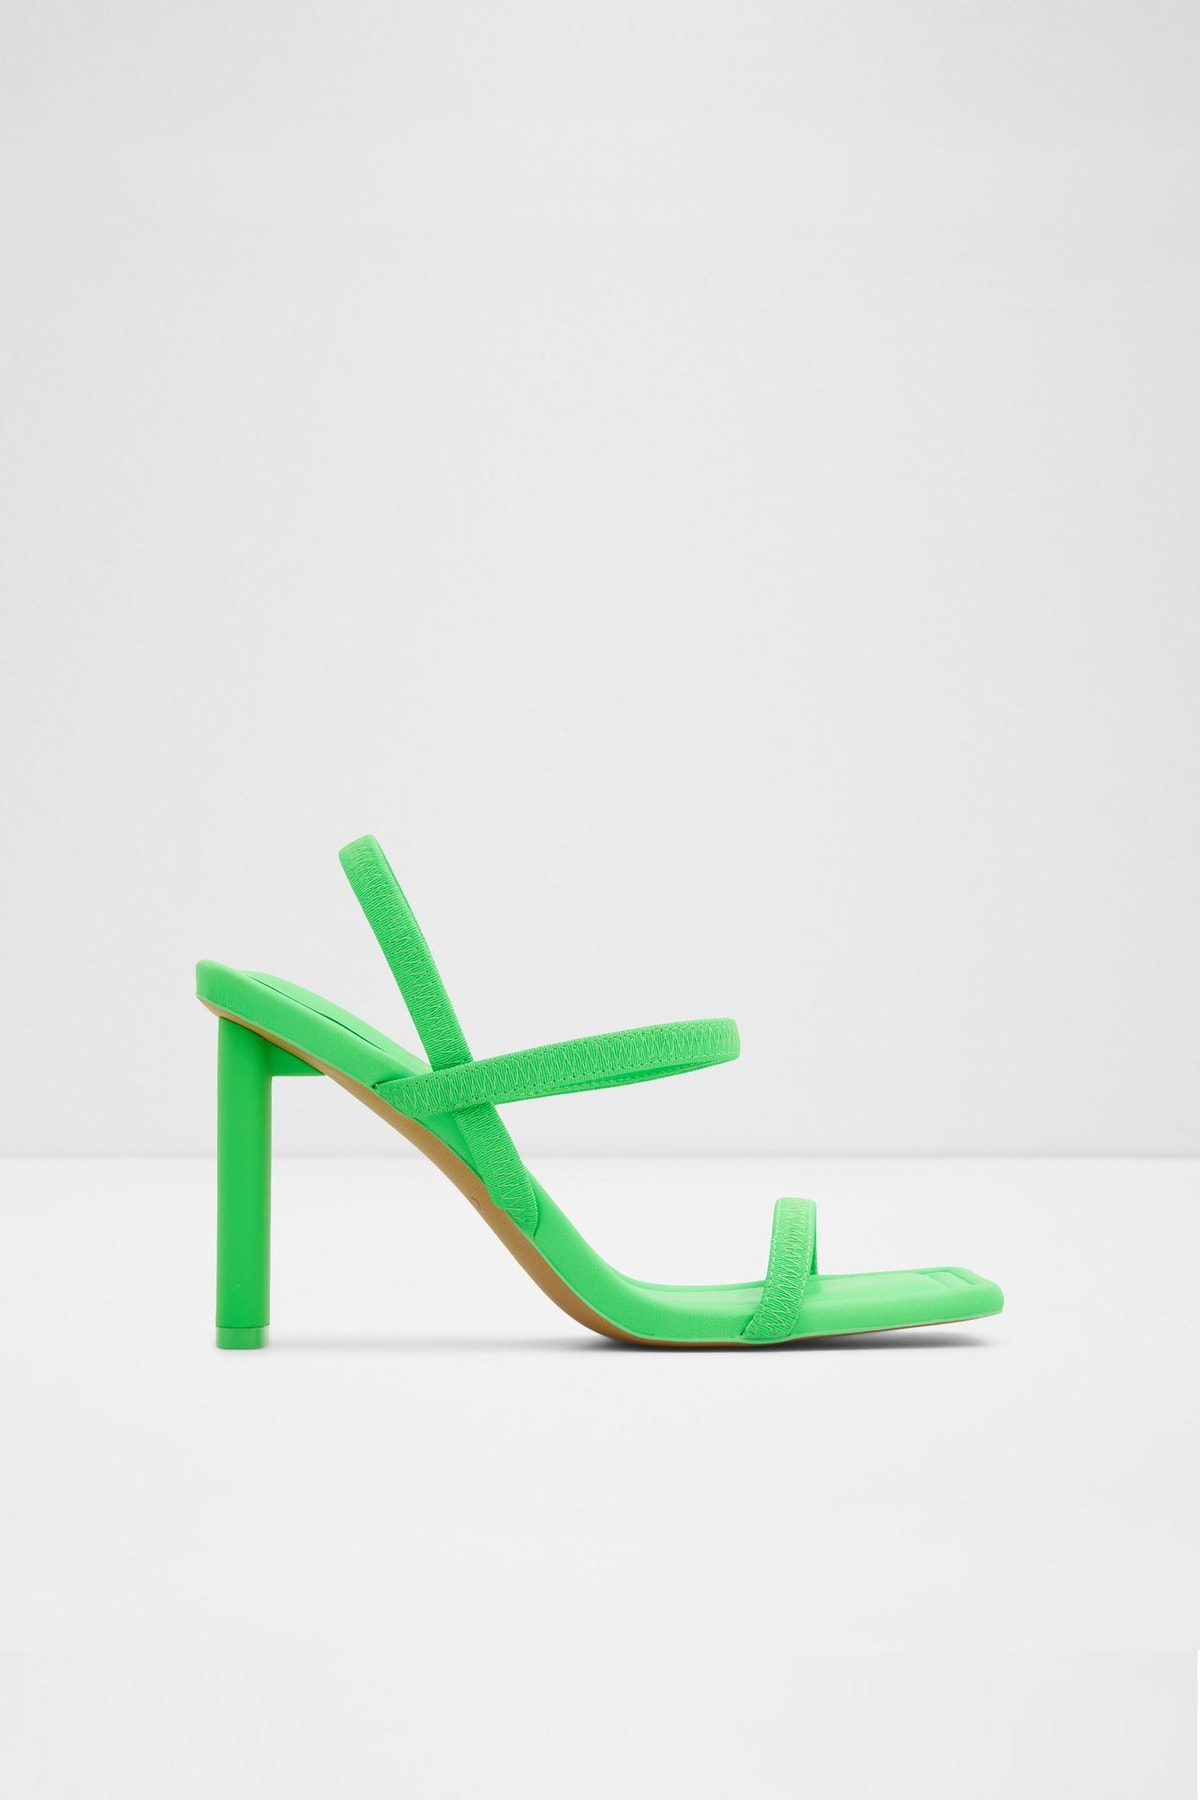 Aldo Okurra - Yeşil Kadın Topuklu Sandalet